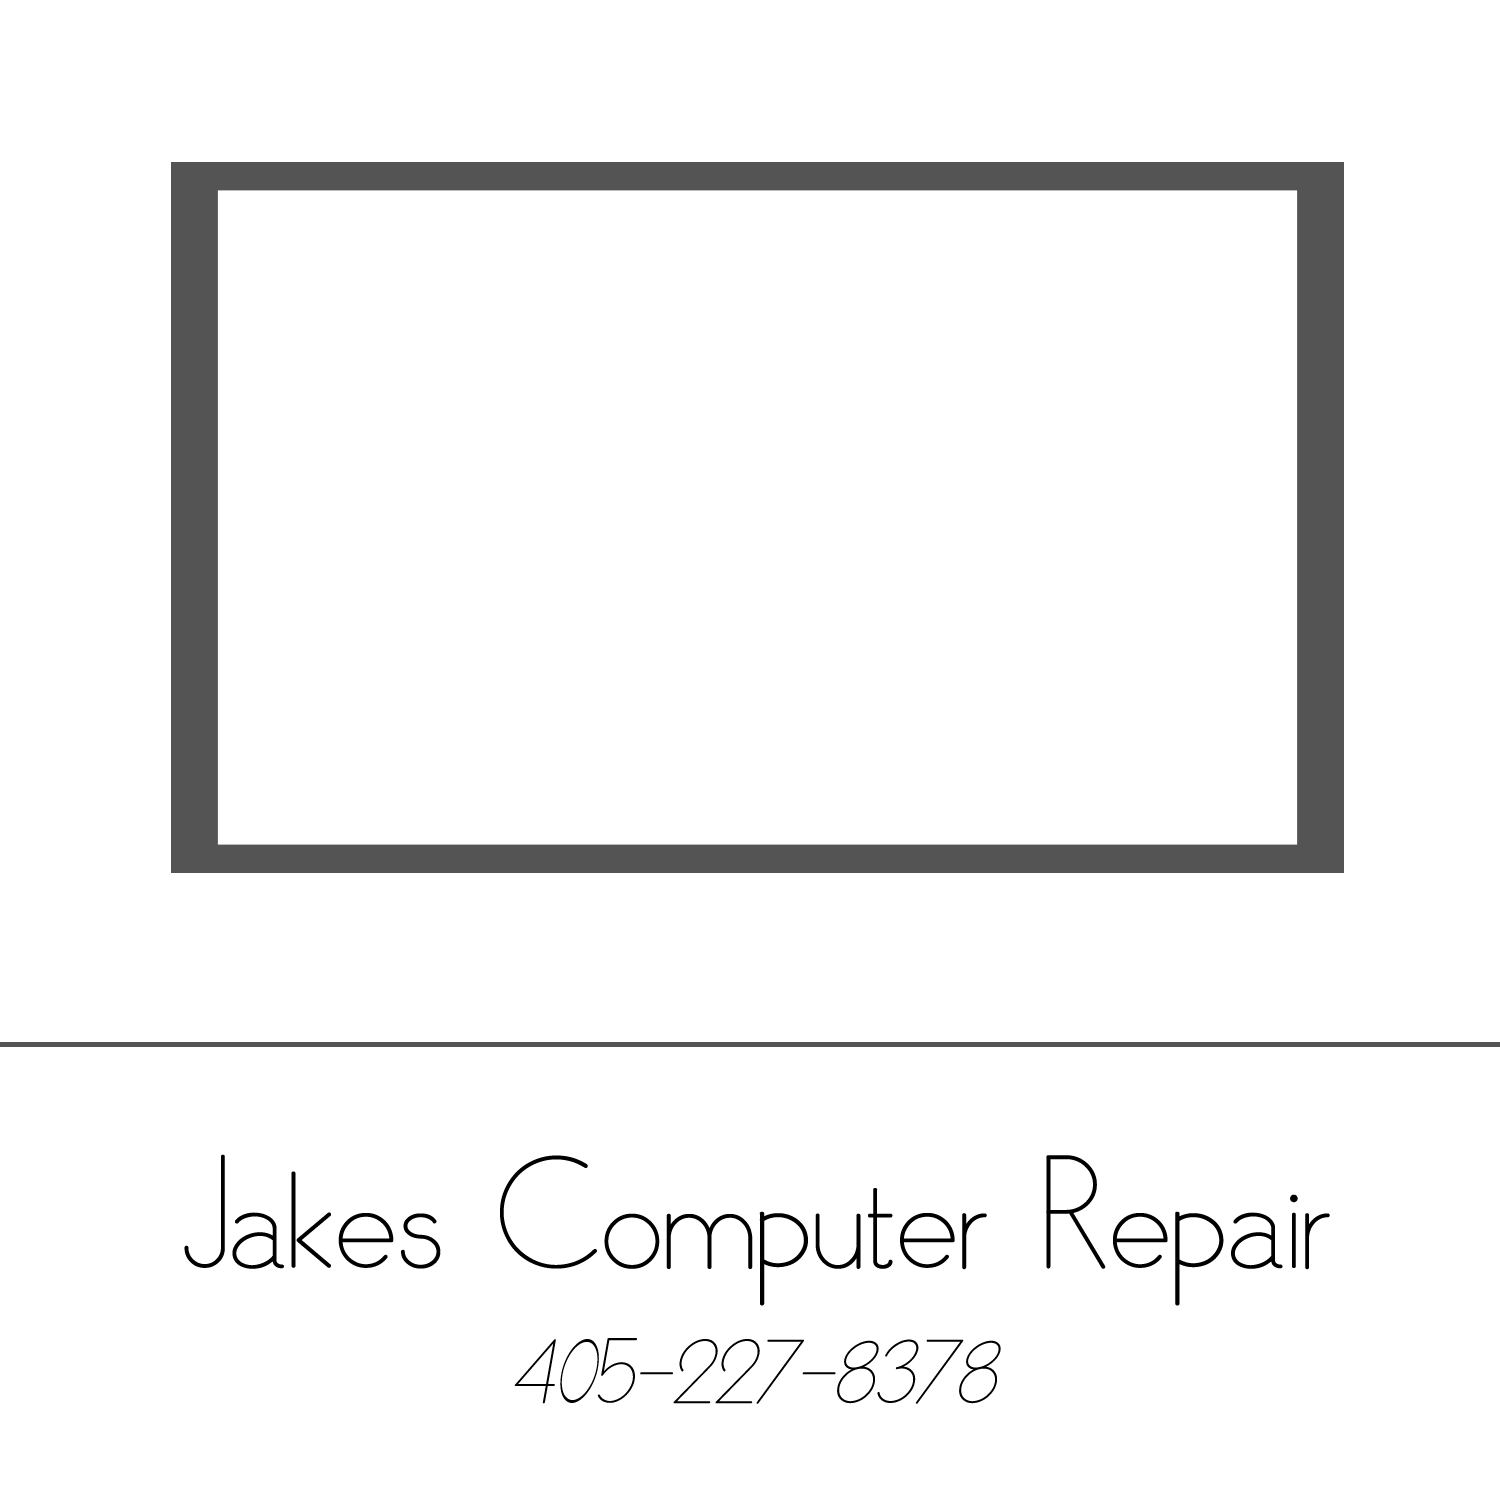 Jake's Computer Repair